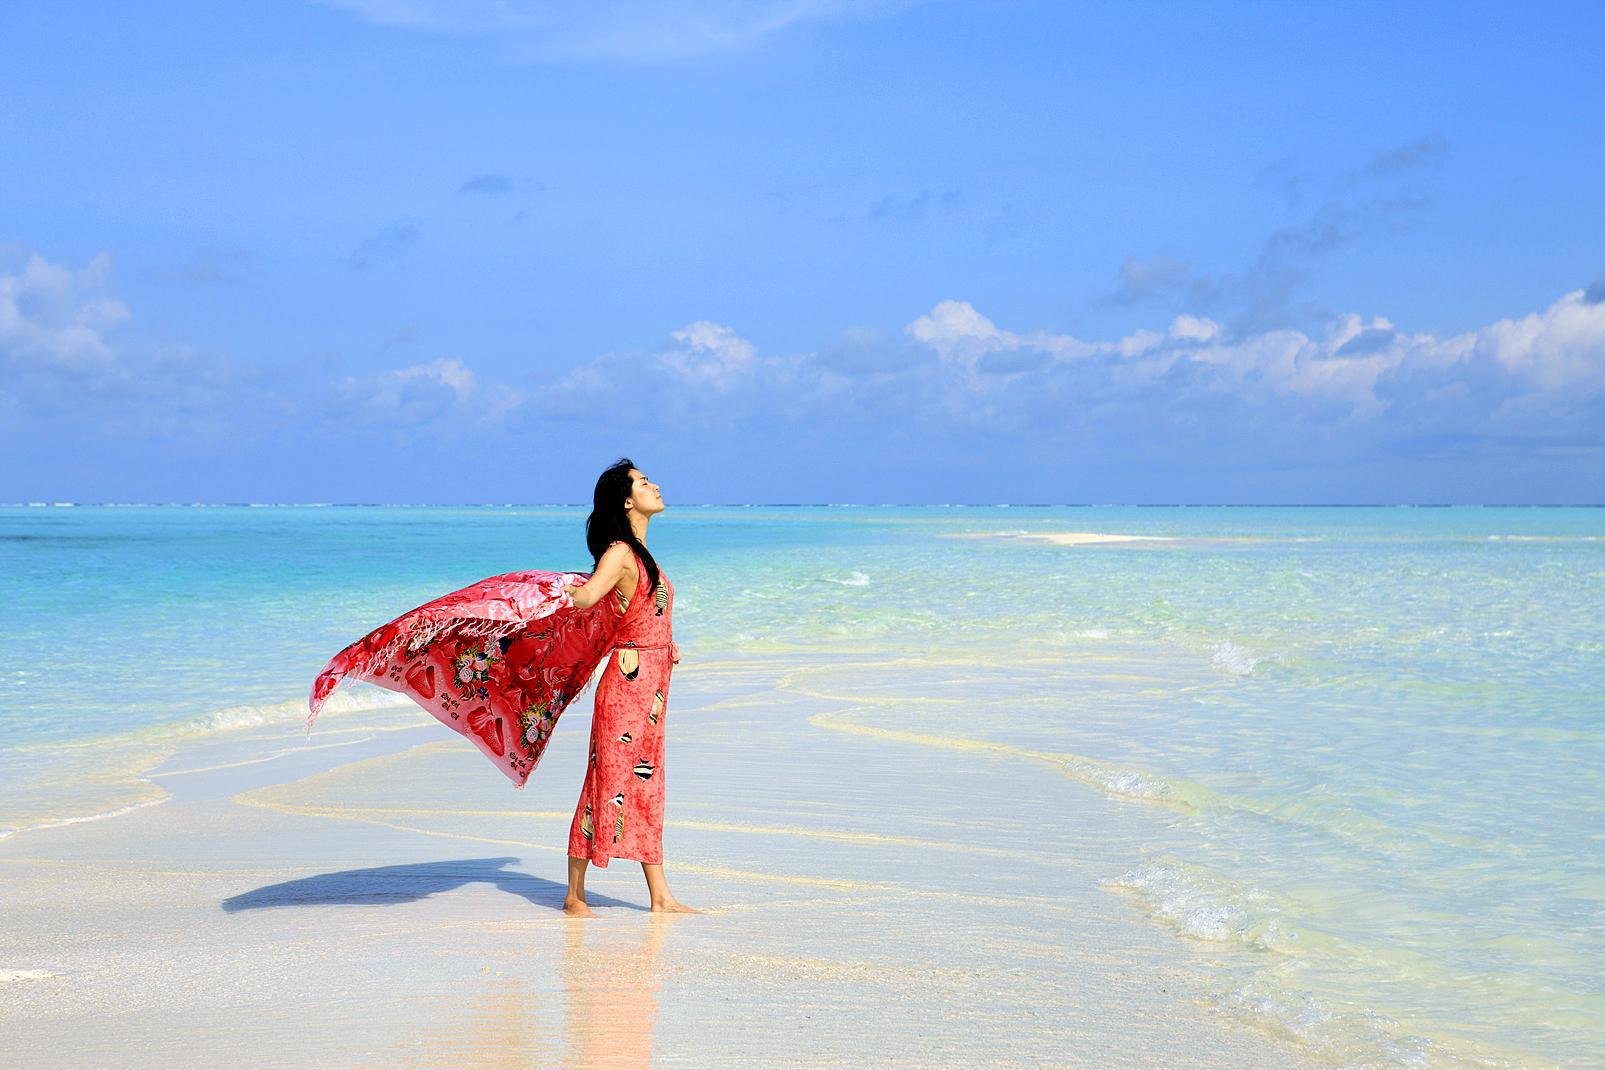 L'atollo di Faafu è l'atollo a sud dell'arcipelago di Ari Sud. E' formato da 6 isole-hotel. Vi invitiamo a sognare leggendo le nostre schede, e chissà magari che il sogno non...diventi realtà! Ci sono tutti gli ingredienti affinché scegliate al meglio e prenotiate l'hotel che meglio corrisponde alle vostre aspettative. Buon viaggio! 

...